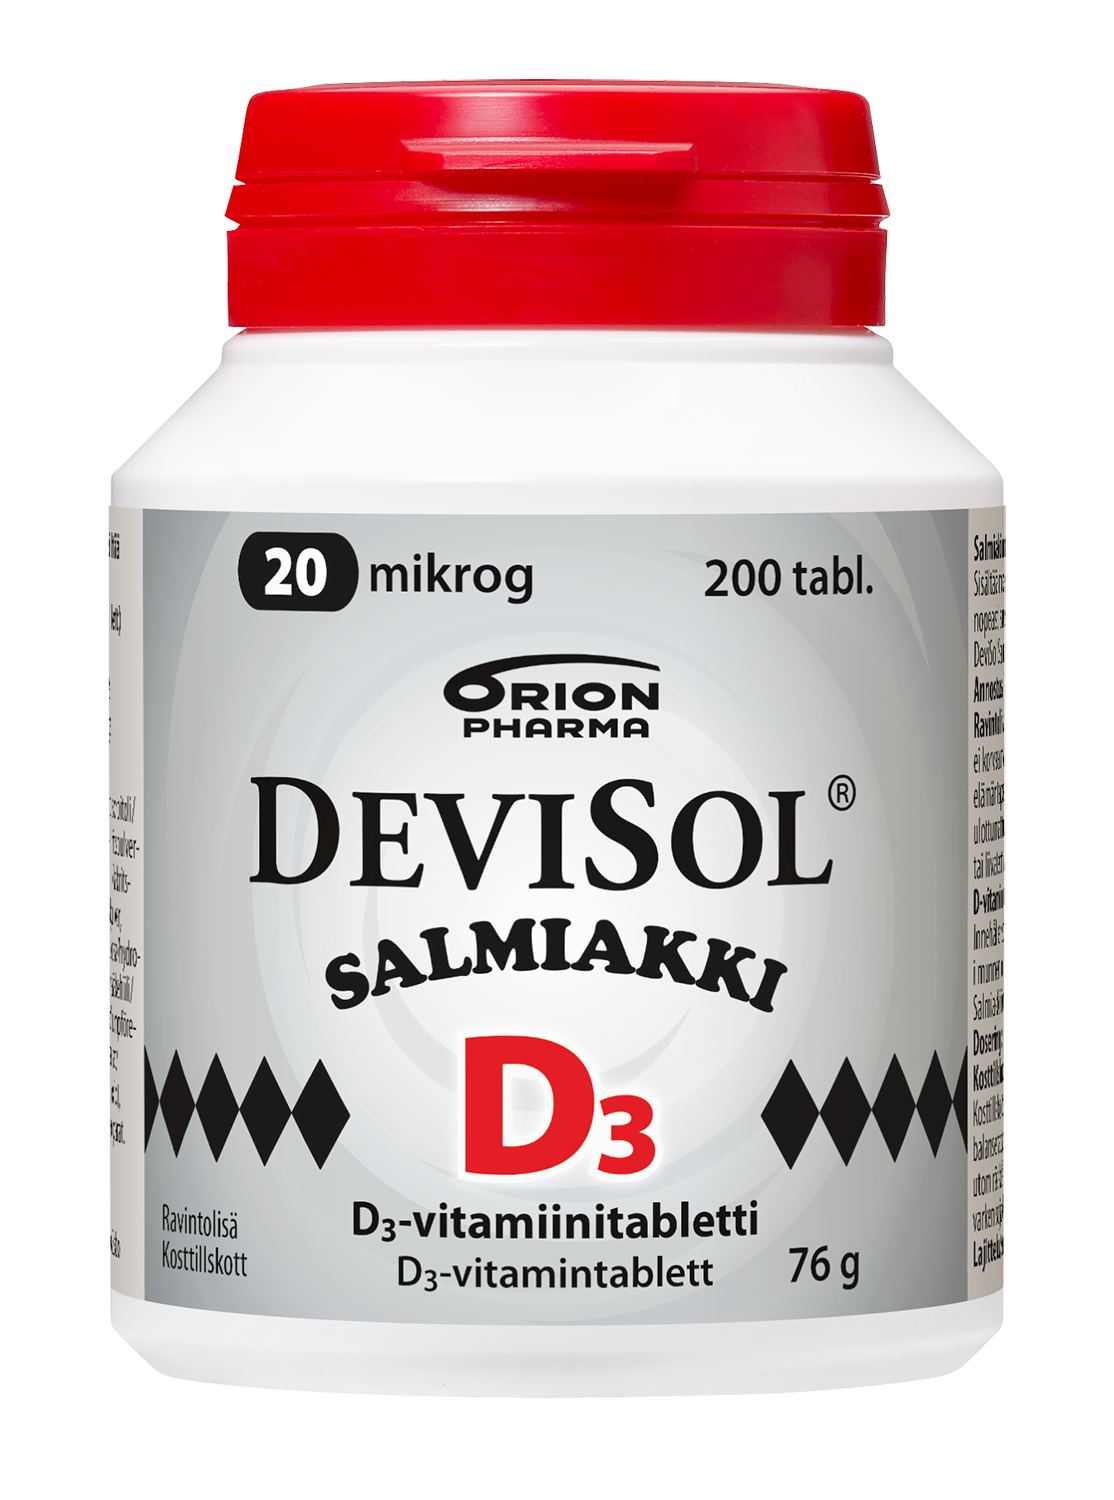 Orion recalls Devisol Salmiakki dietary supplement from consumers